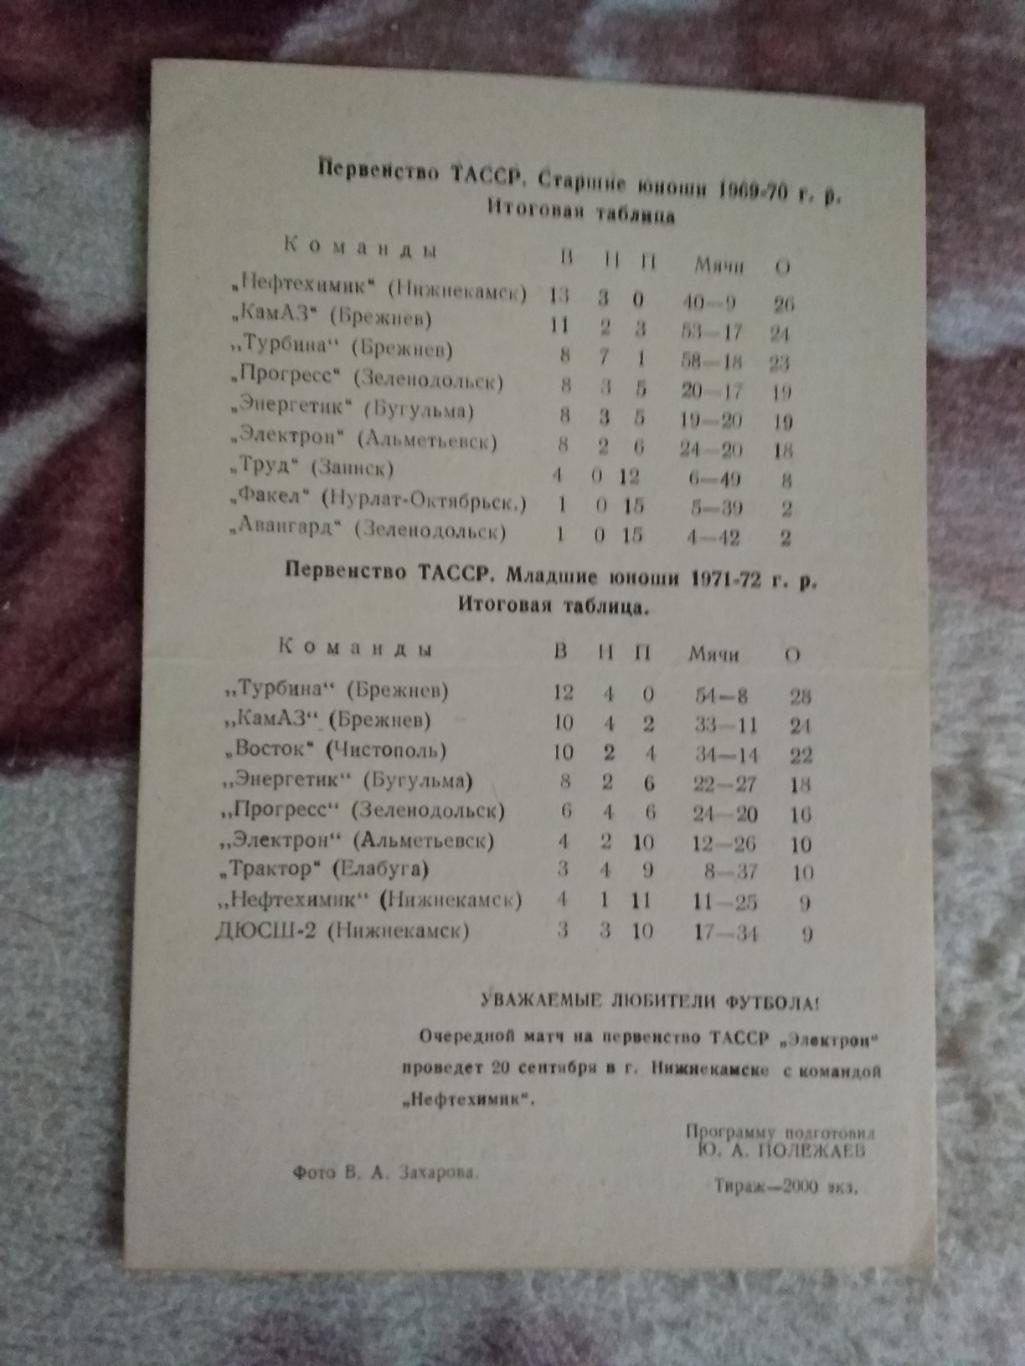 Электрон (Альметьевск) - Зенит (Ленинград) ТМ 1986 г. 1